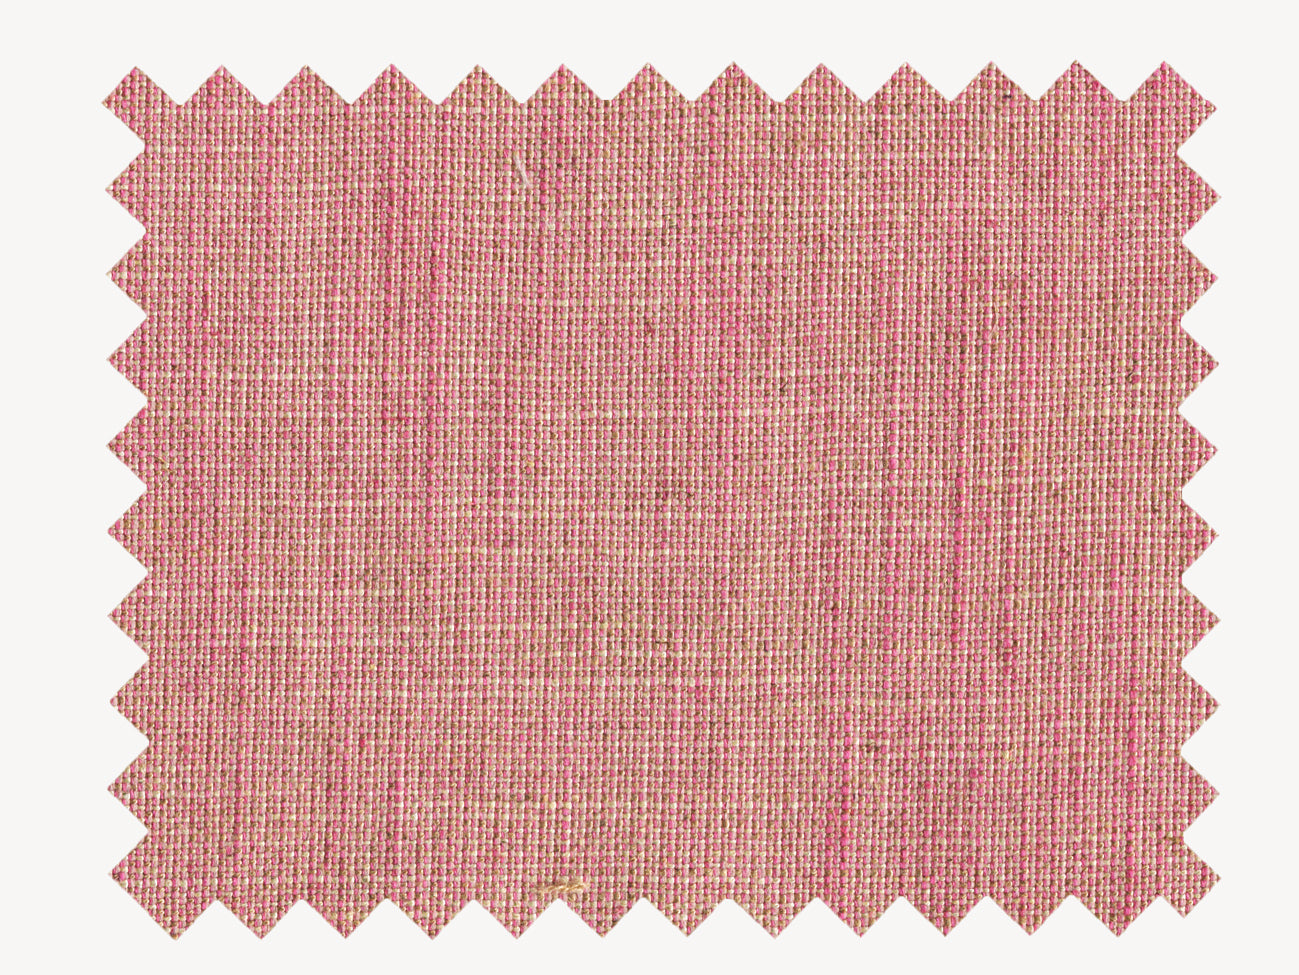 Hendre Jacket | Pink Acer